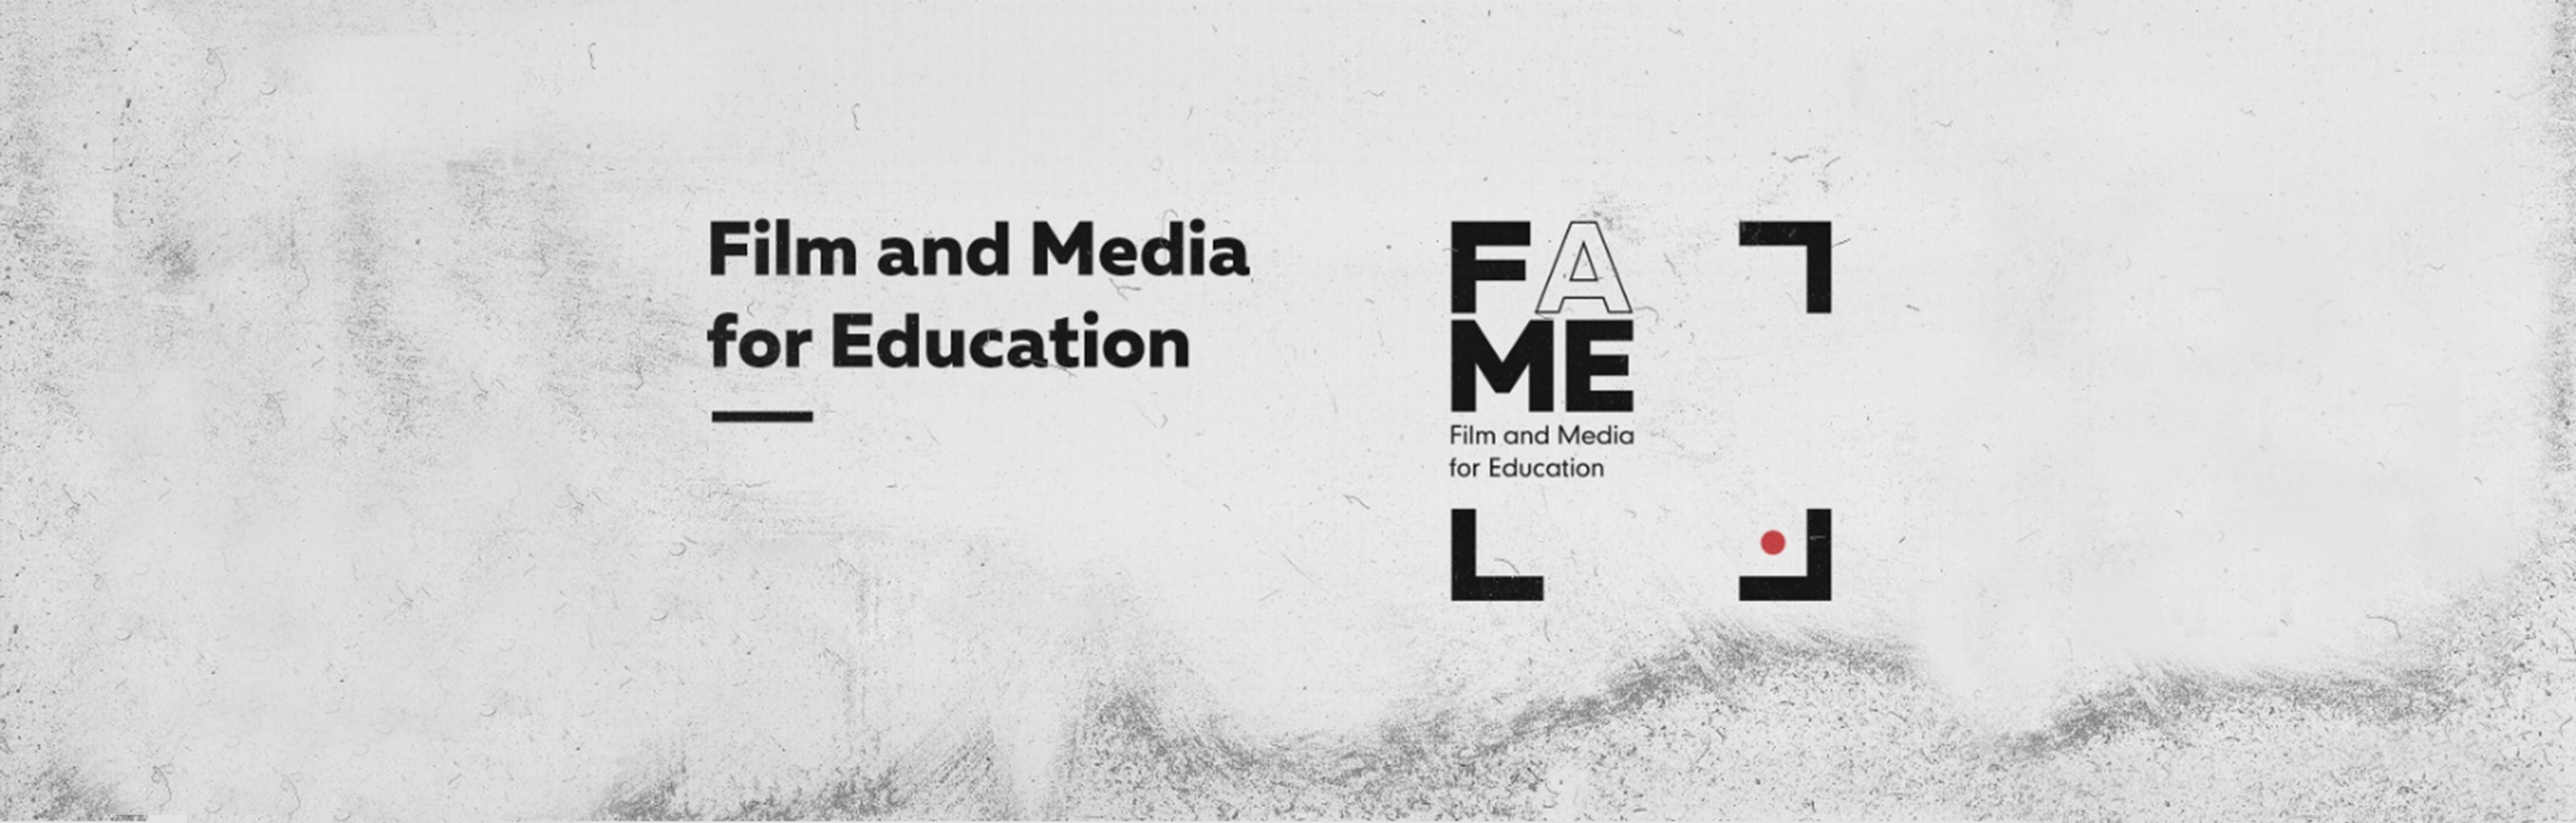 Fame3 logo